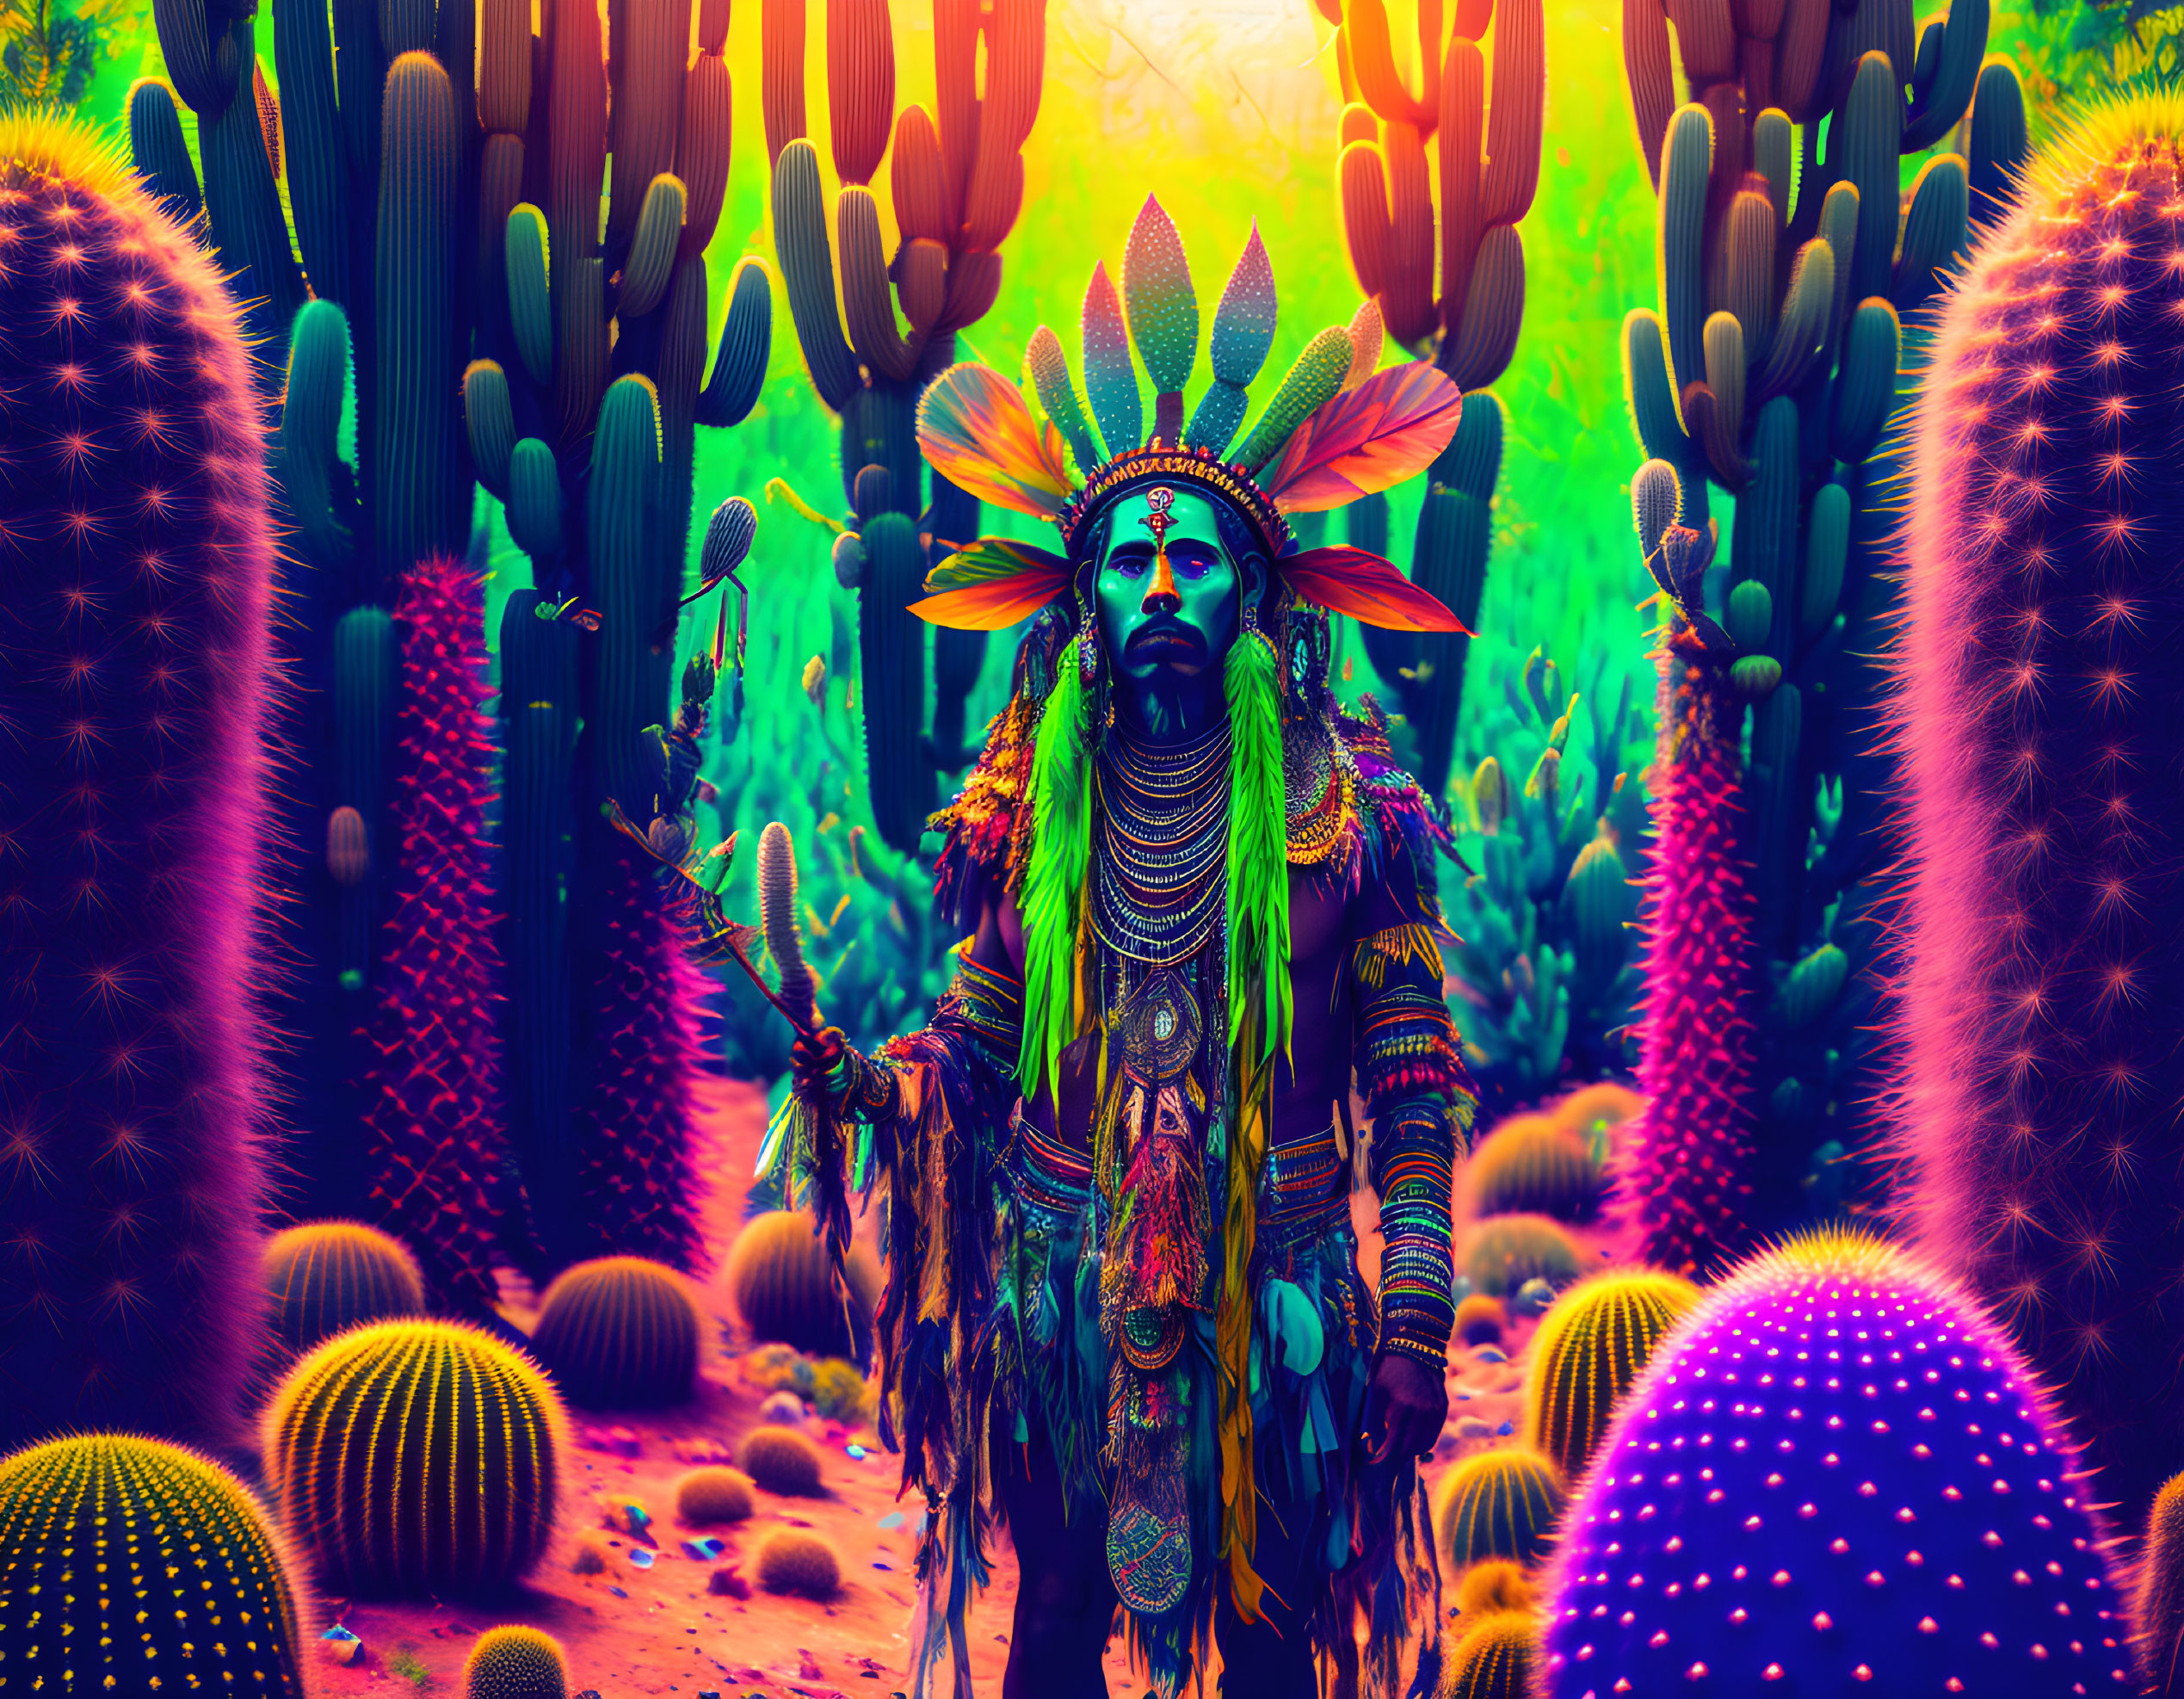 Vibrant Native American-inspired figure in neon-lit desert